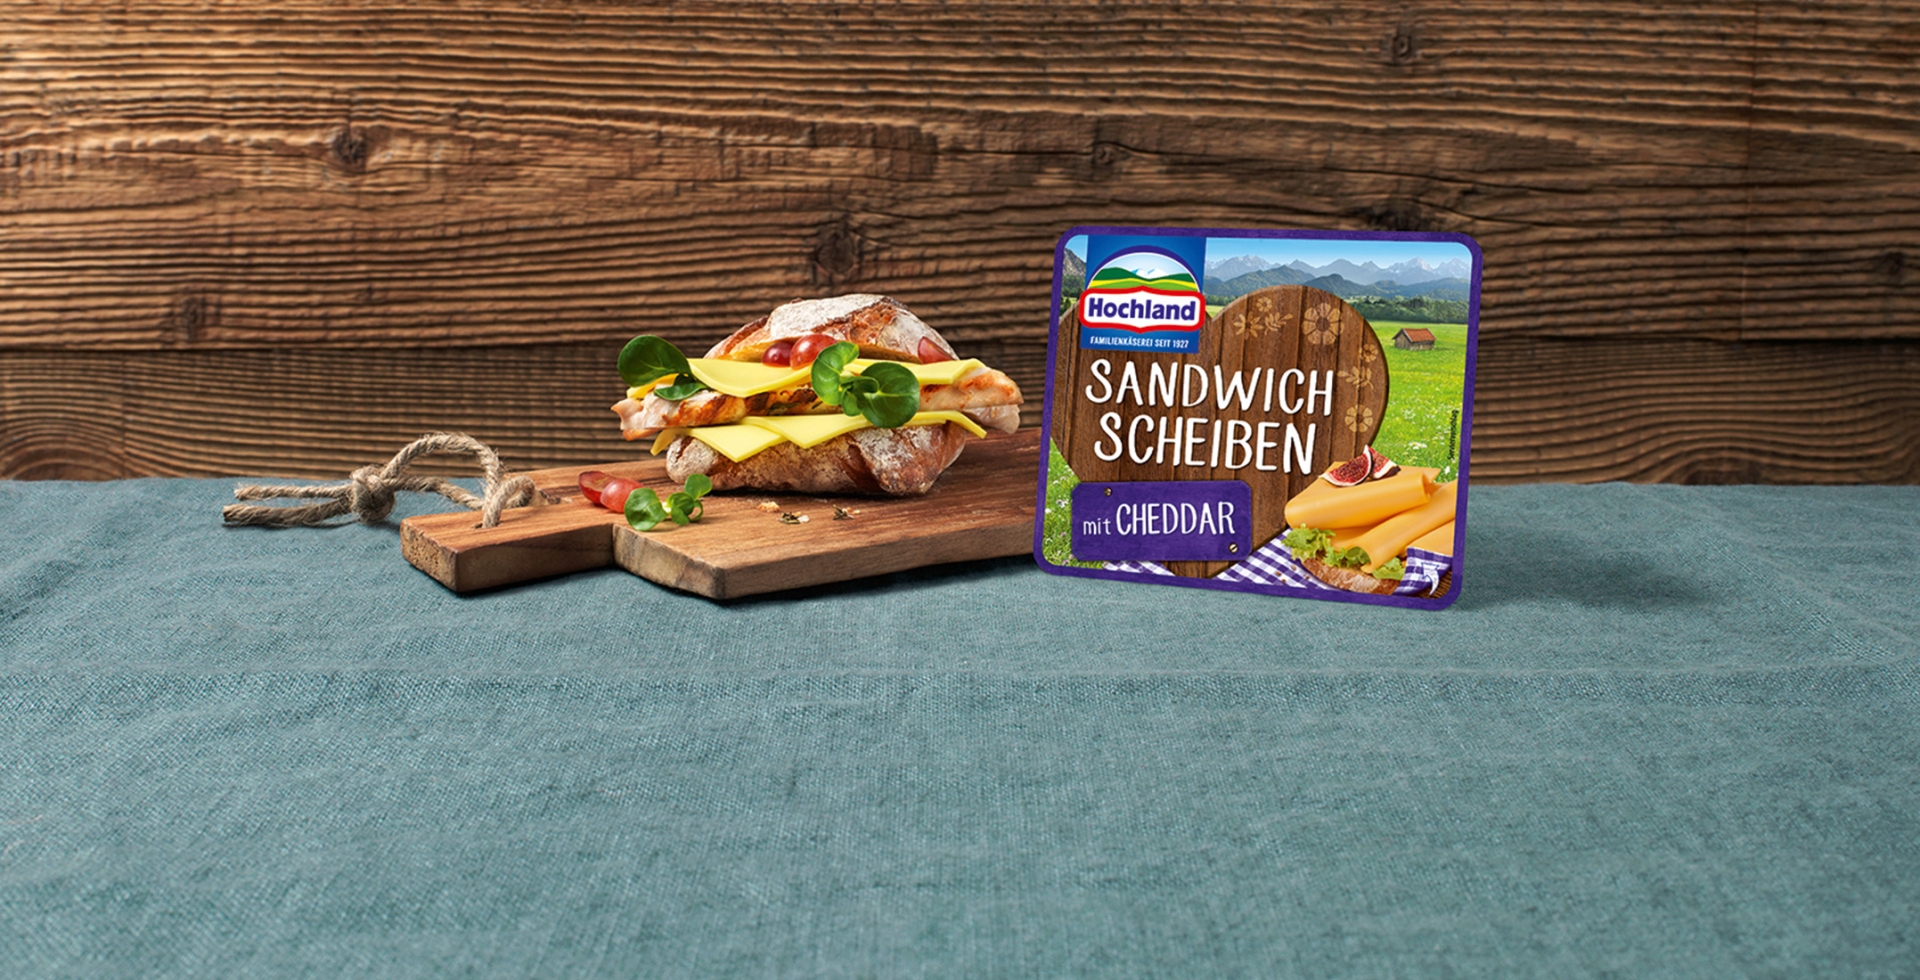 Sandwich Scheiben Cheddar